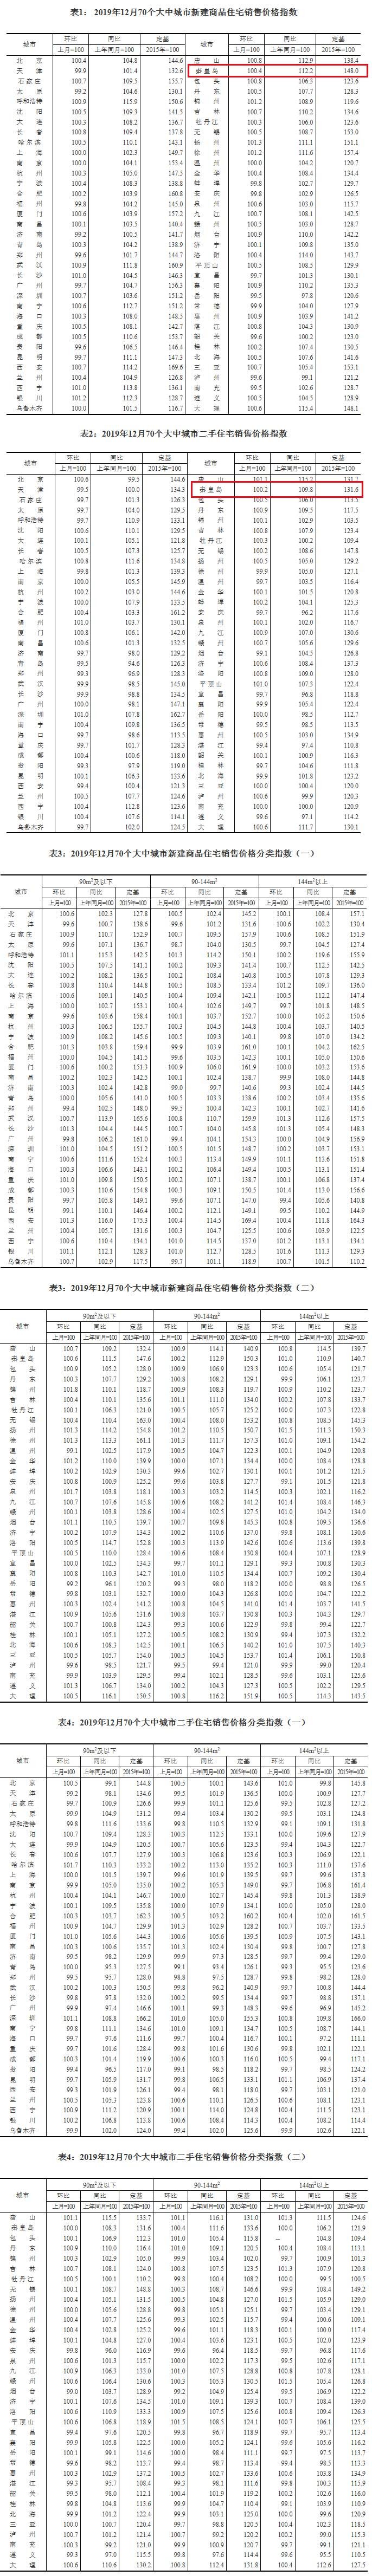 秦皇岛2019年12月新房房价环涨0.4%  同比涨12.2%